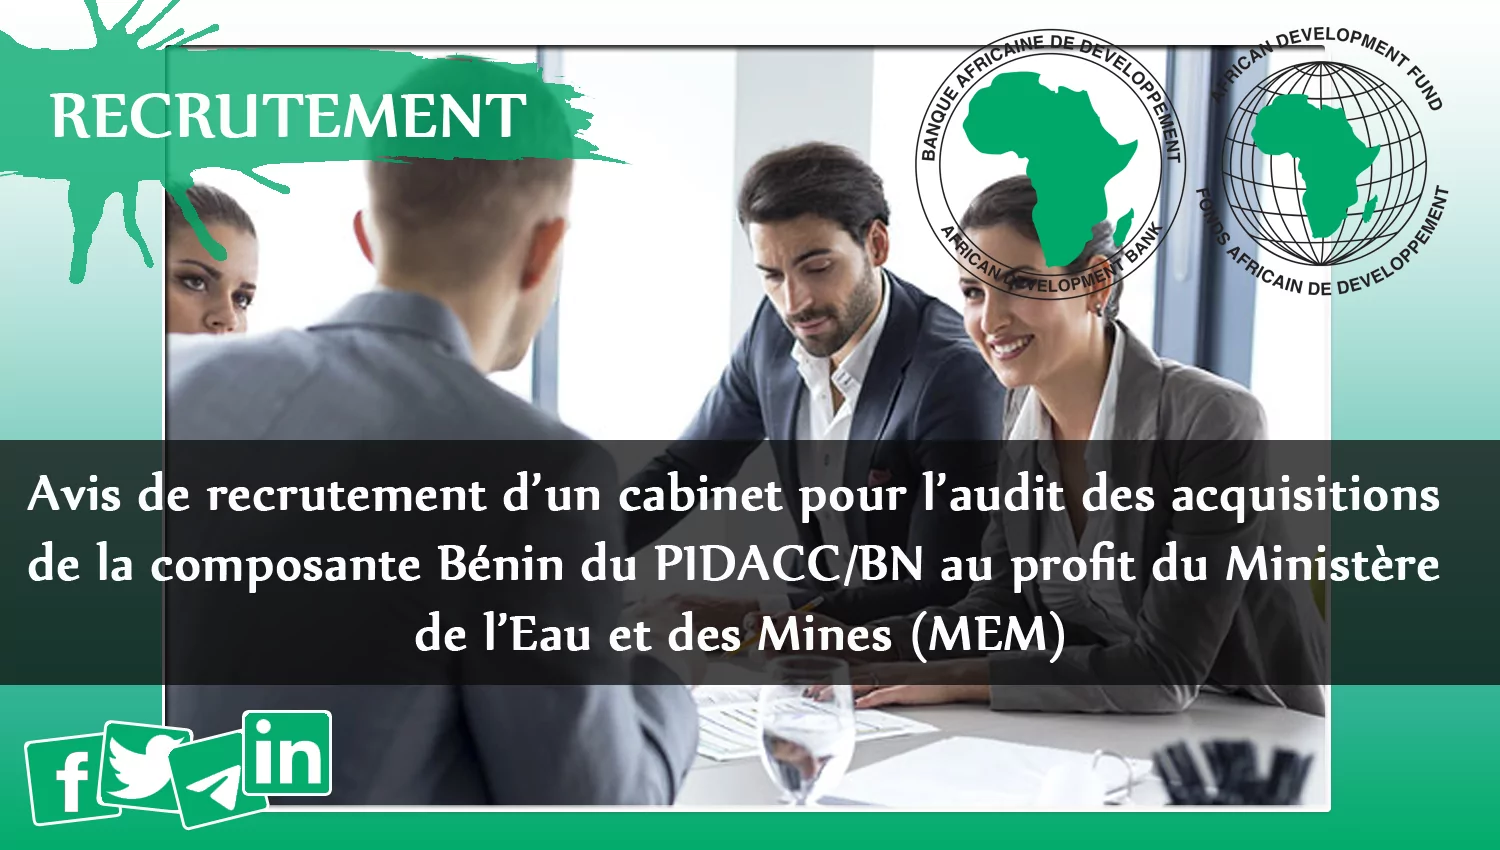 Avis de recrutement d’un cabinet pour l’audit des acquisitions de la composante Bénin du PIDACC/BN au profit du Ministère de l’Eau et des Mines (MEM)